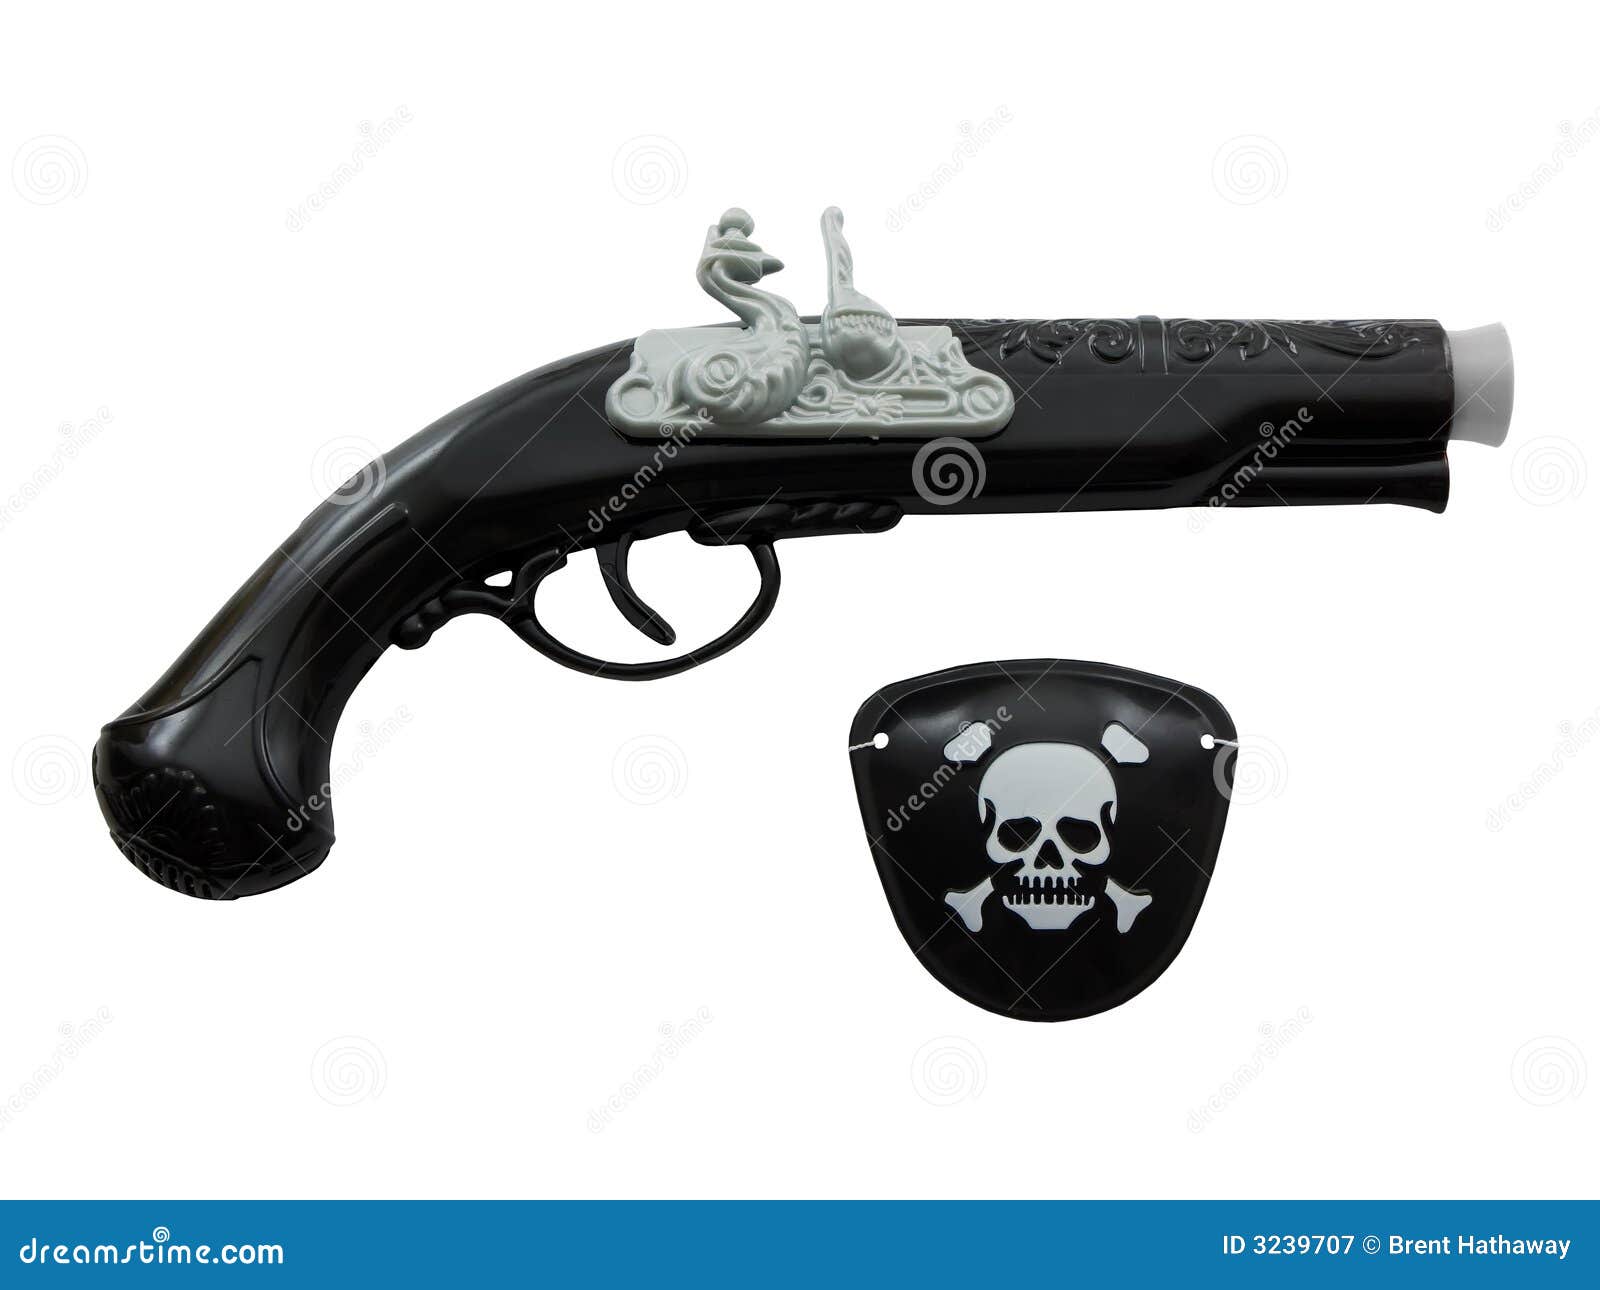 pirate-gun-eye-patch-3239707.jpg